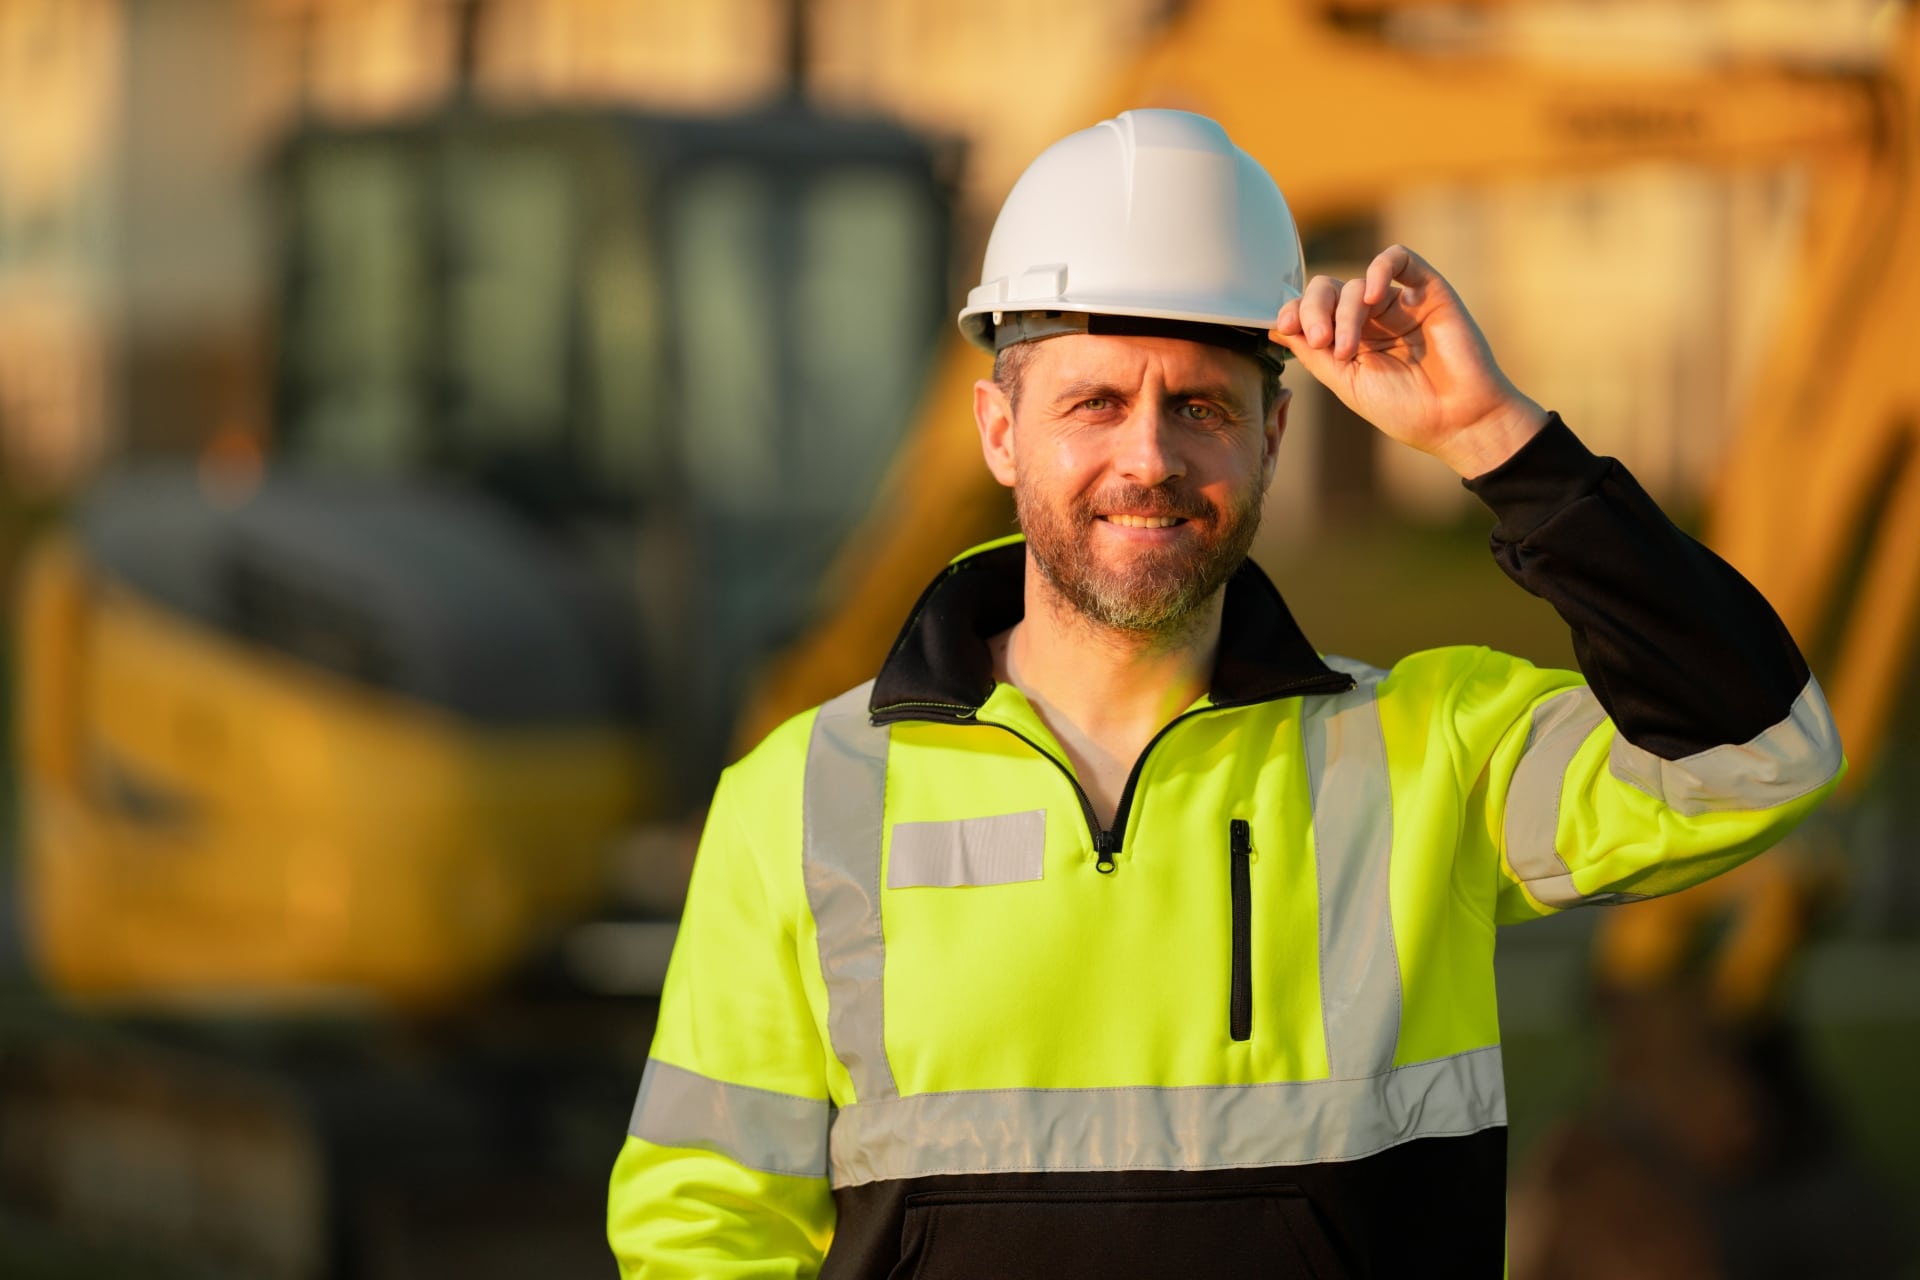 Construction worker on building site in helmet